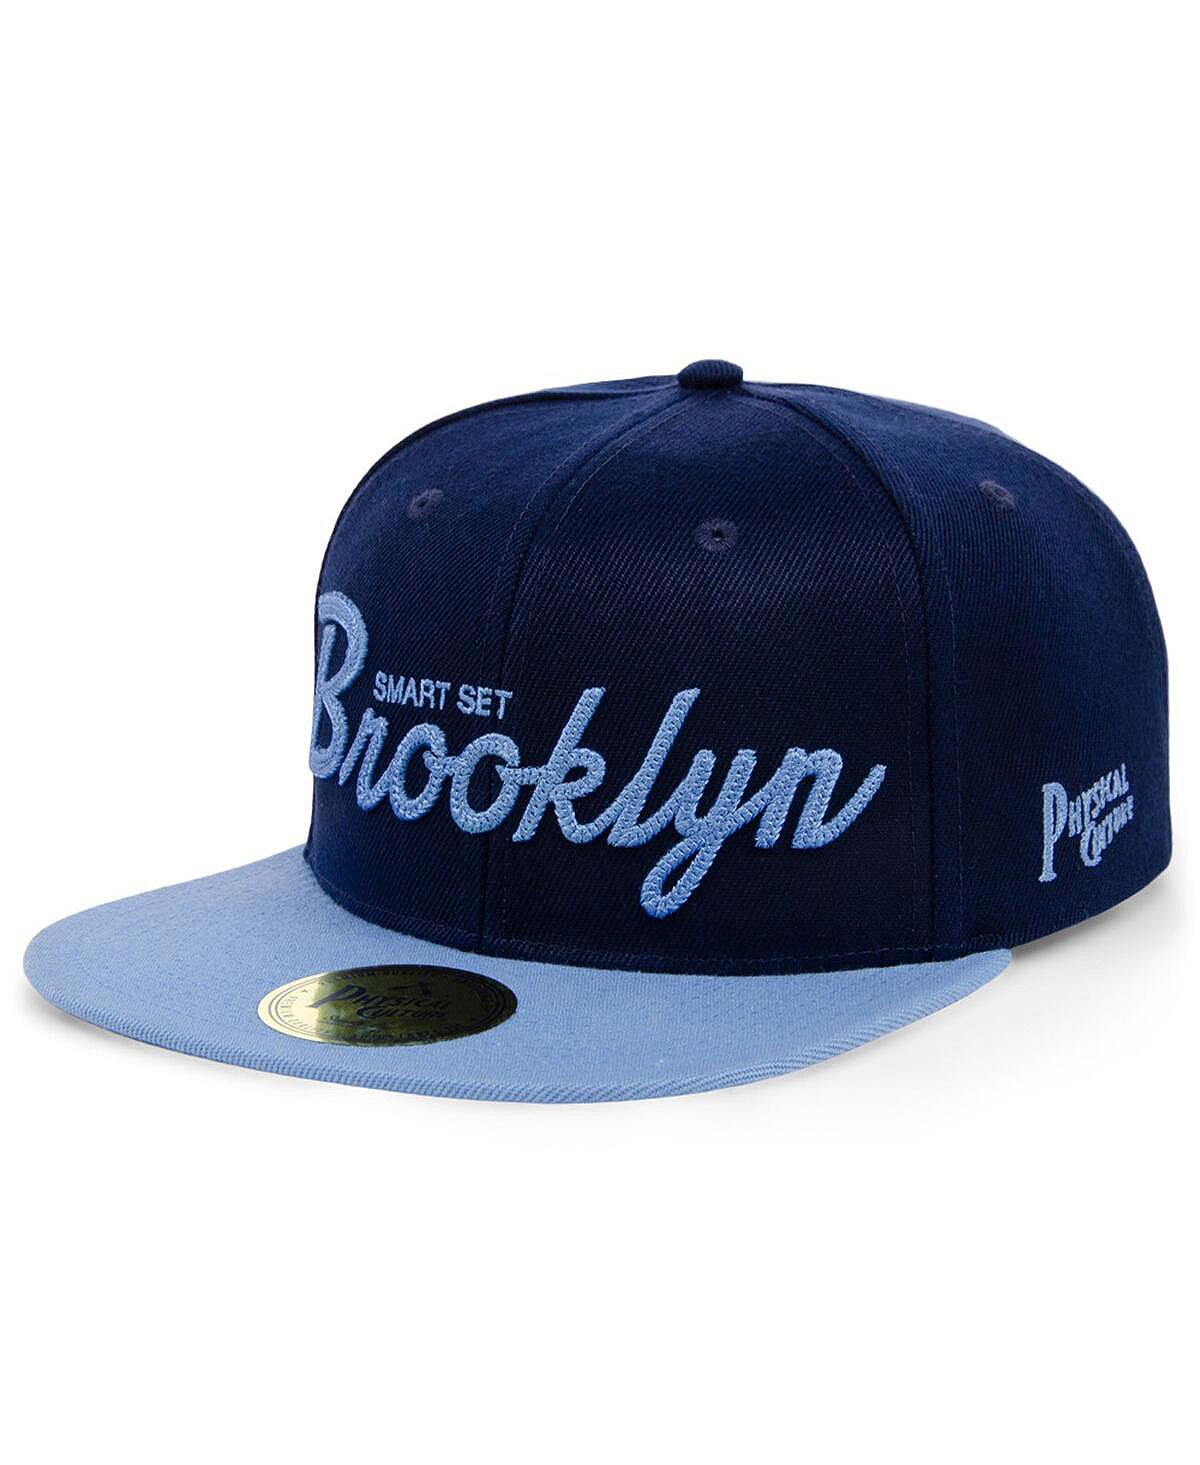 Мужская темно-синяя регулируемая шляпа Smart Set Athletic Club of Brooklyn Black Fives Snapback Physical Culture